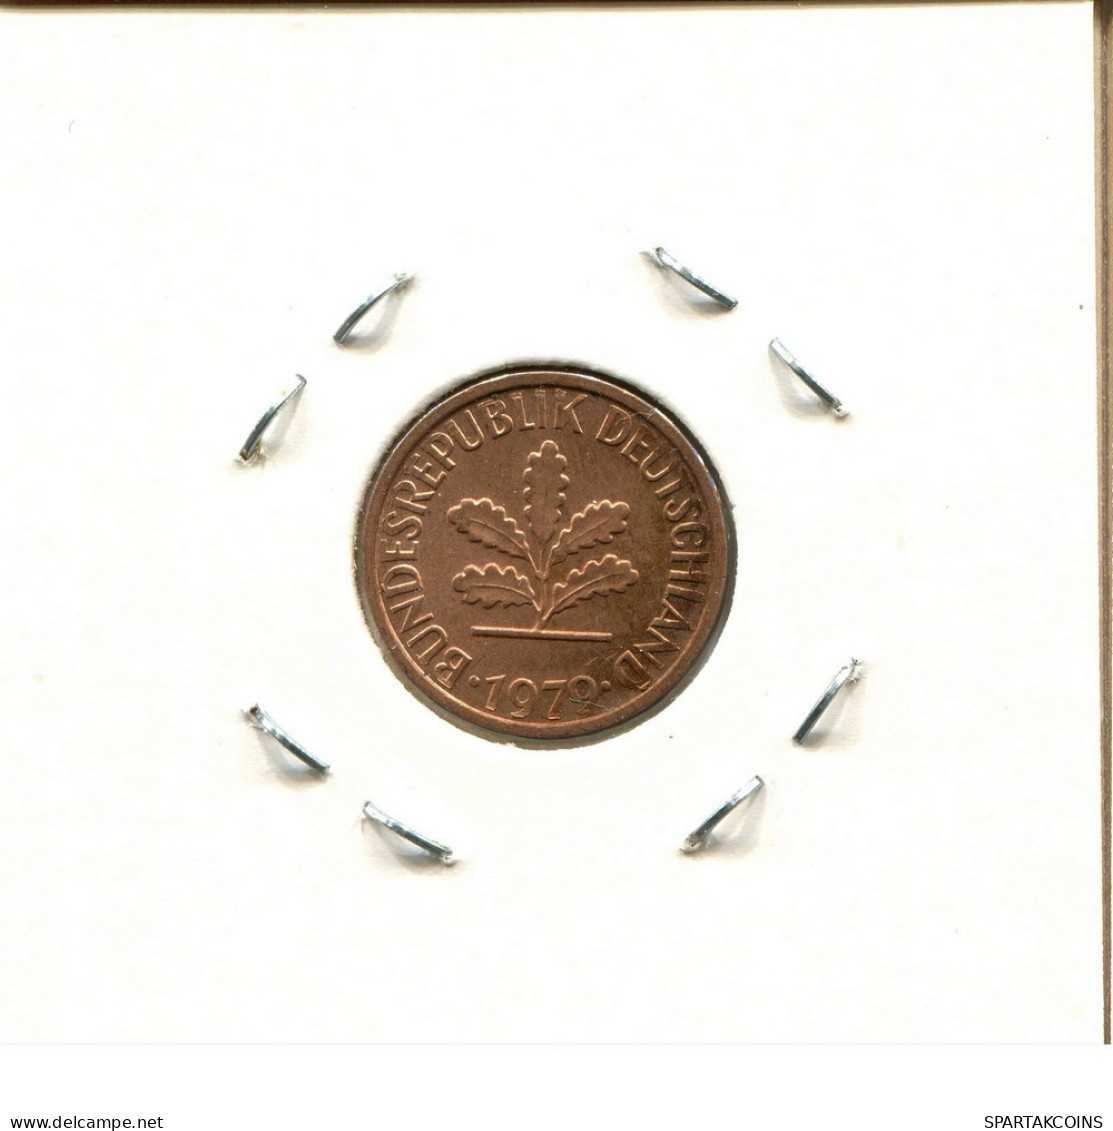 1 PFENNIG 1979 F WEST & UNIFIED GERMANY Coin #DC060.U.A - 1 Pfennig